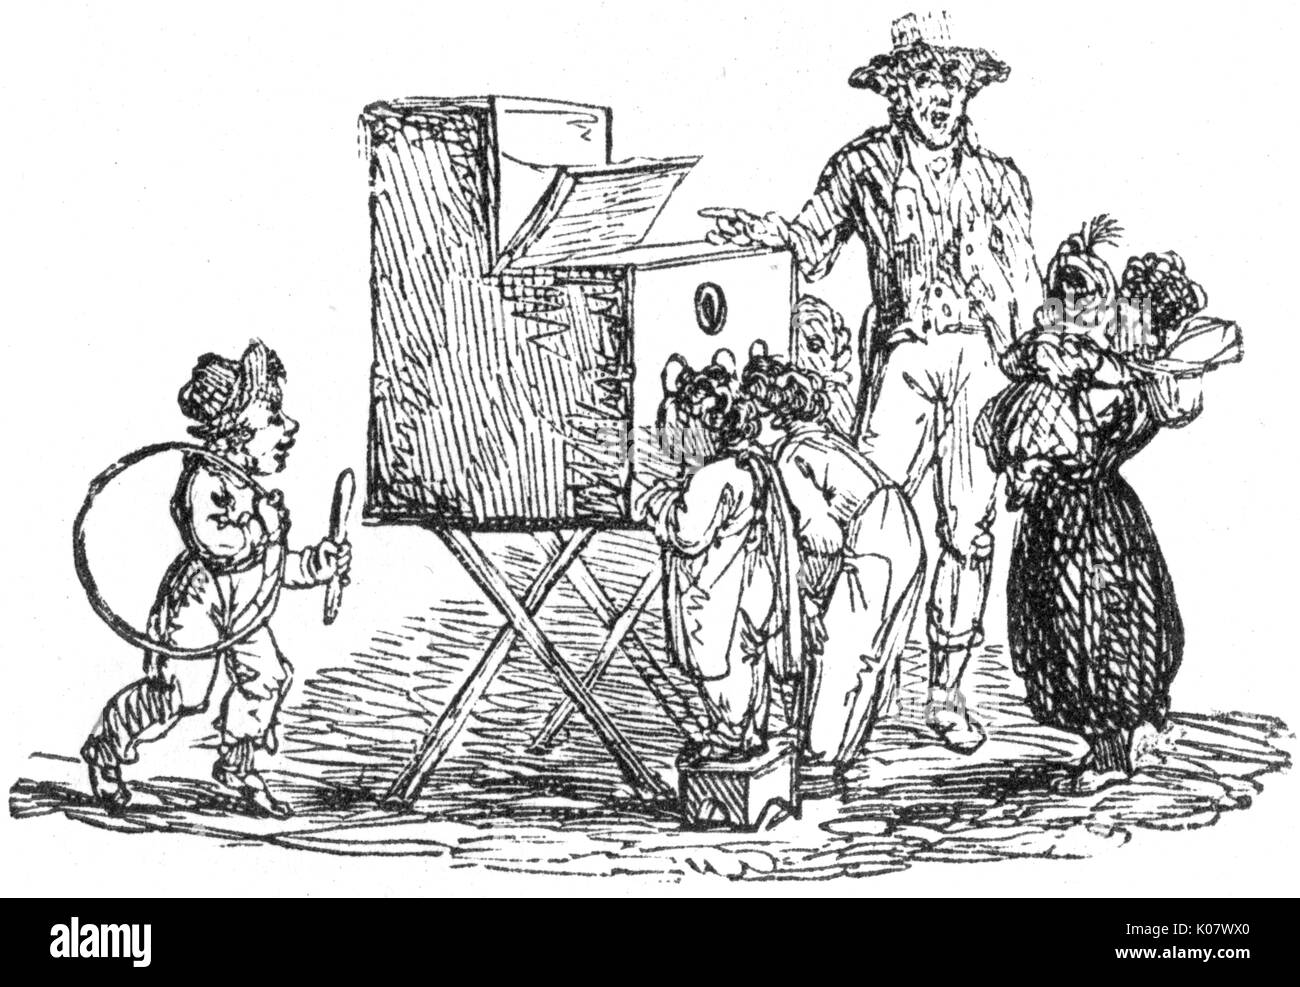 Los niños mirar un cuadro de peep dispositivo, c.1810. Fecha: c.1810 Foto de stock